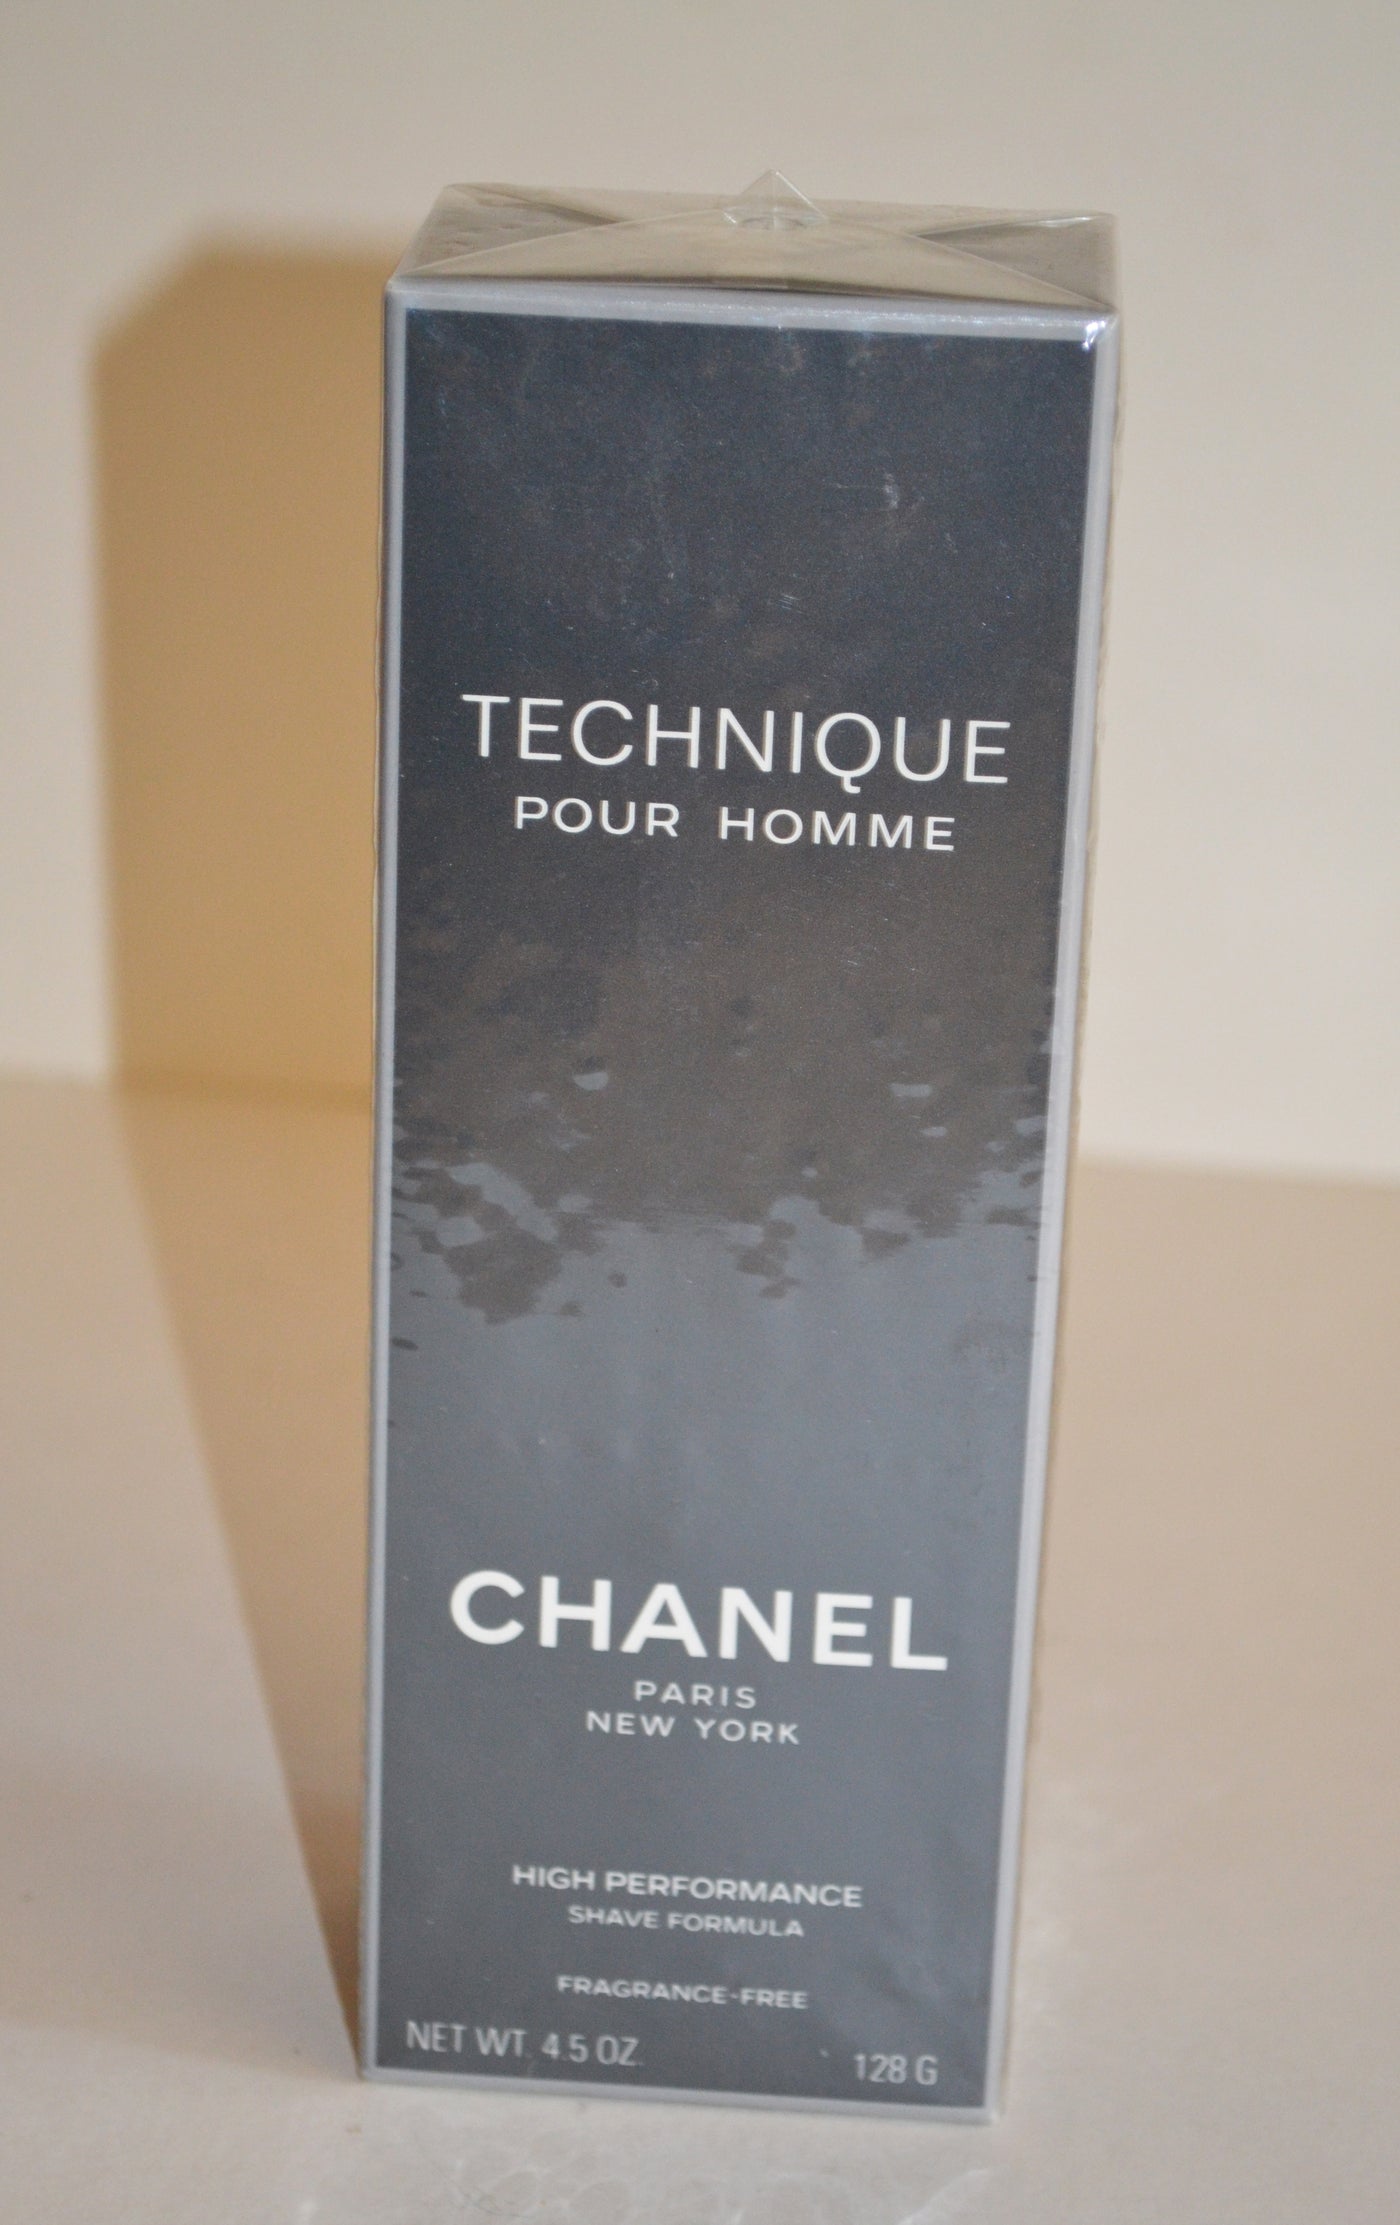 Technique Pour Homme Shave Formula By Chanel